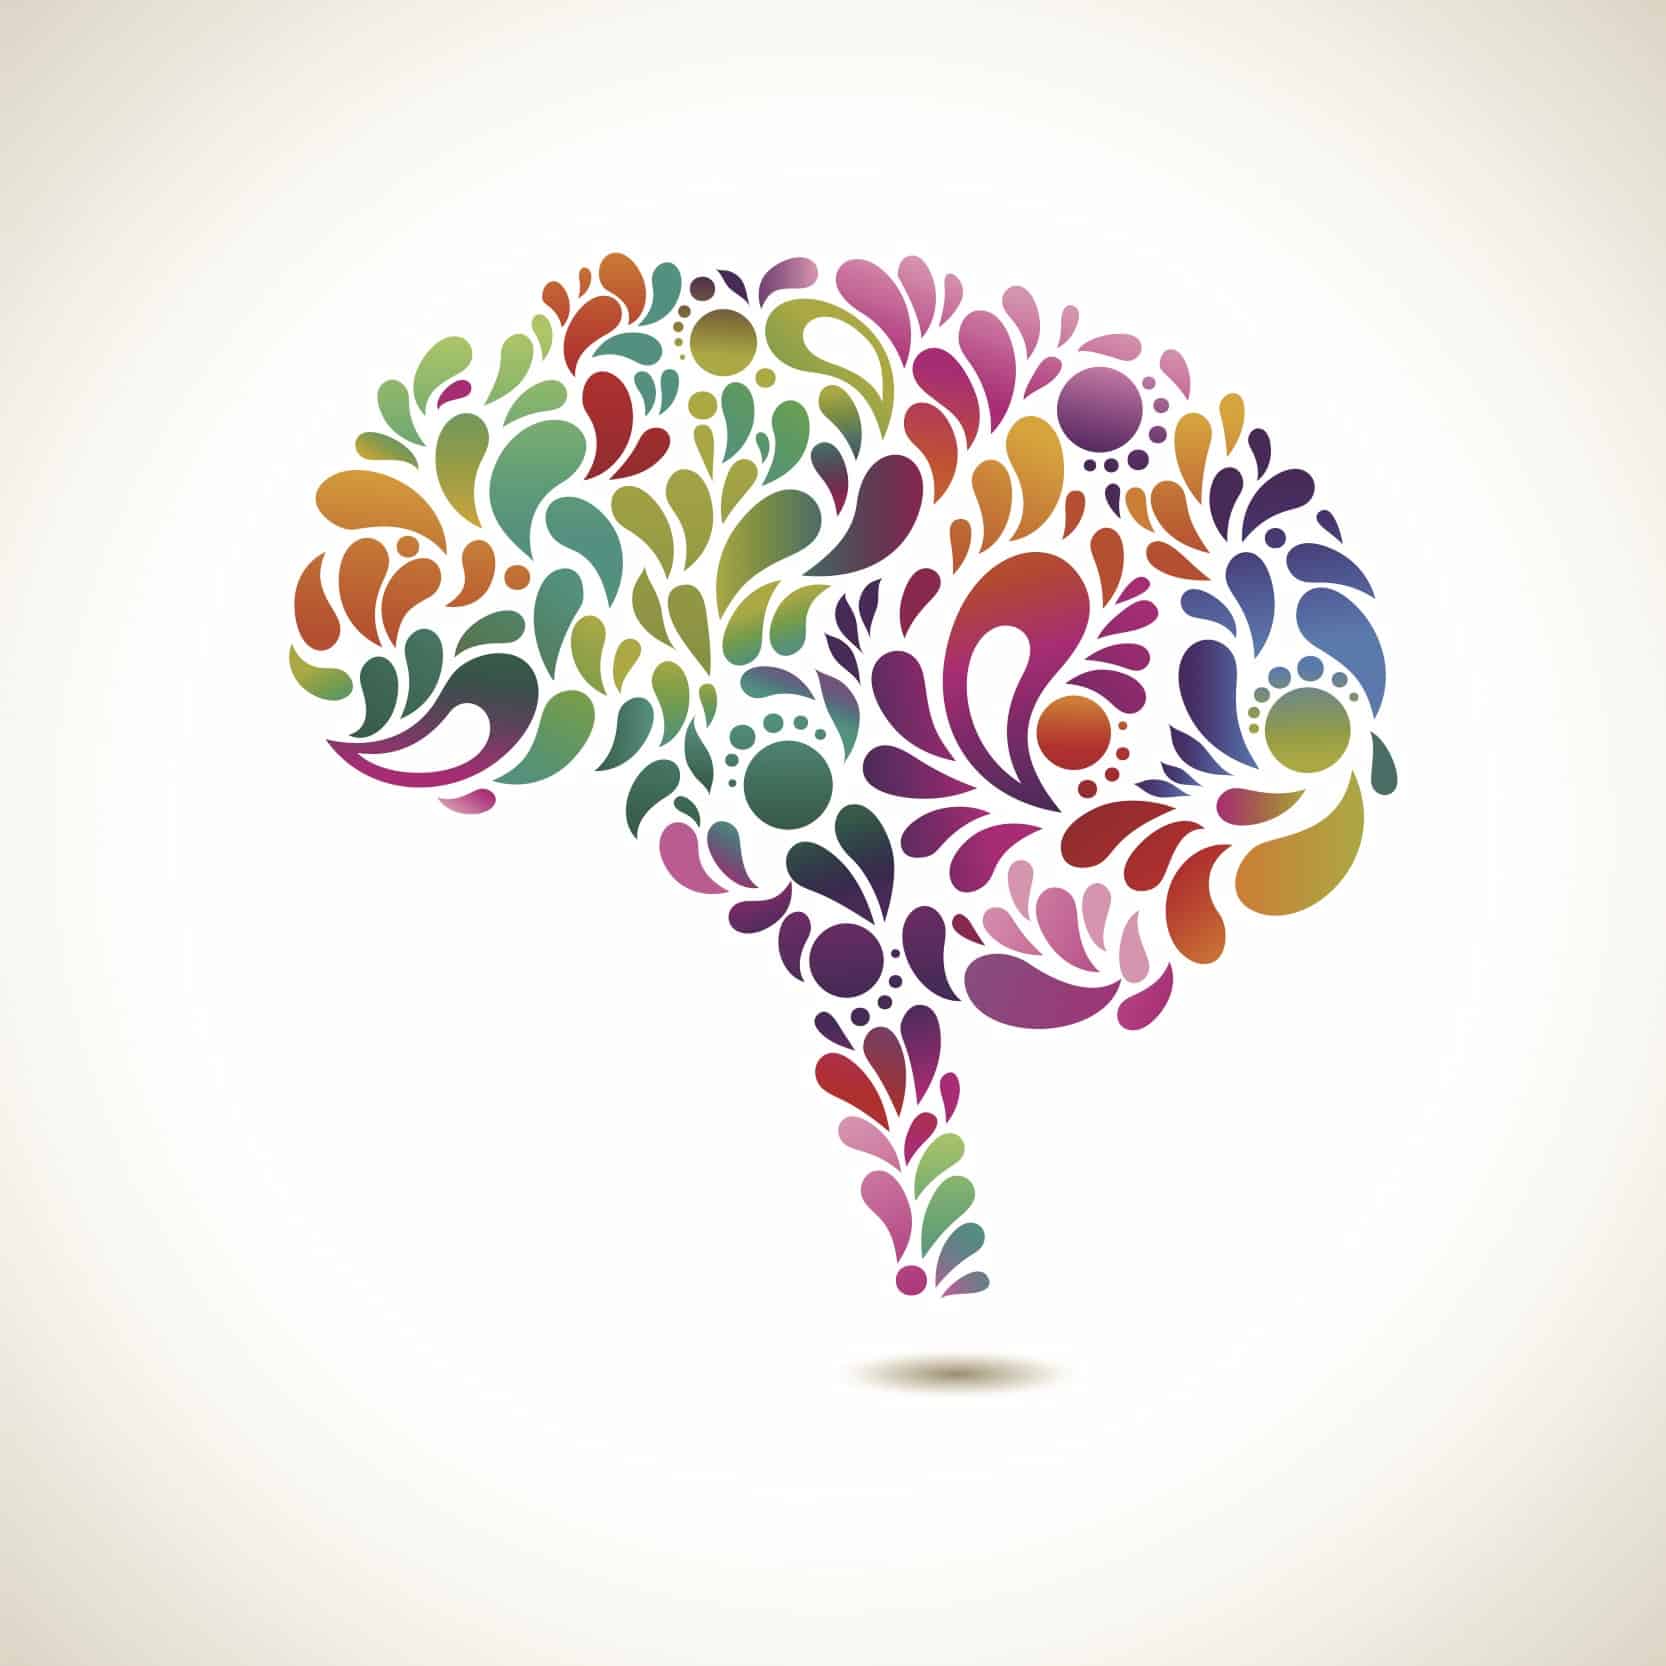 A colourful beautiful brain picture